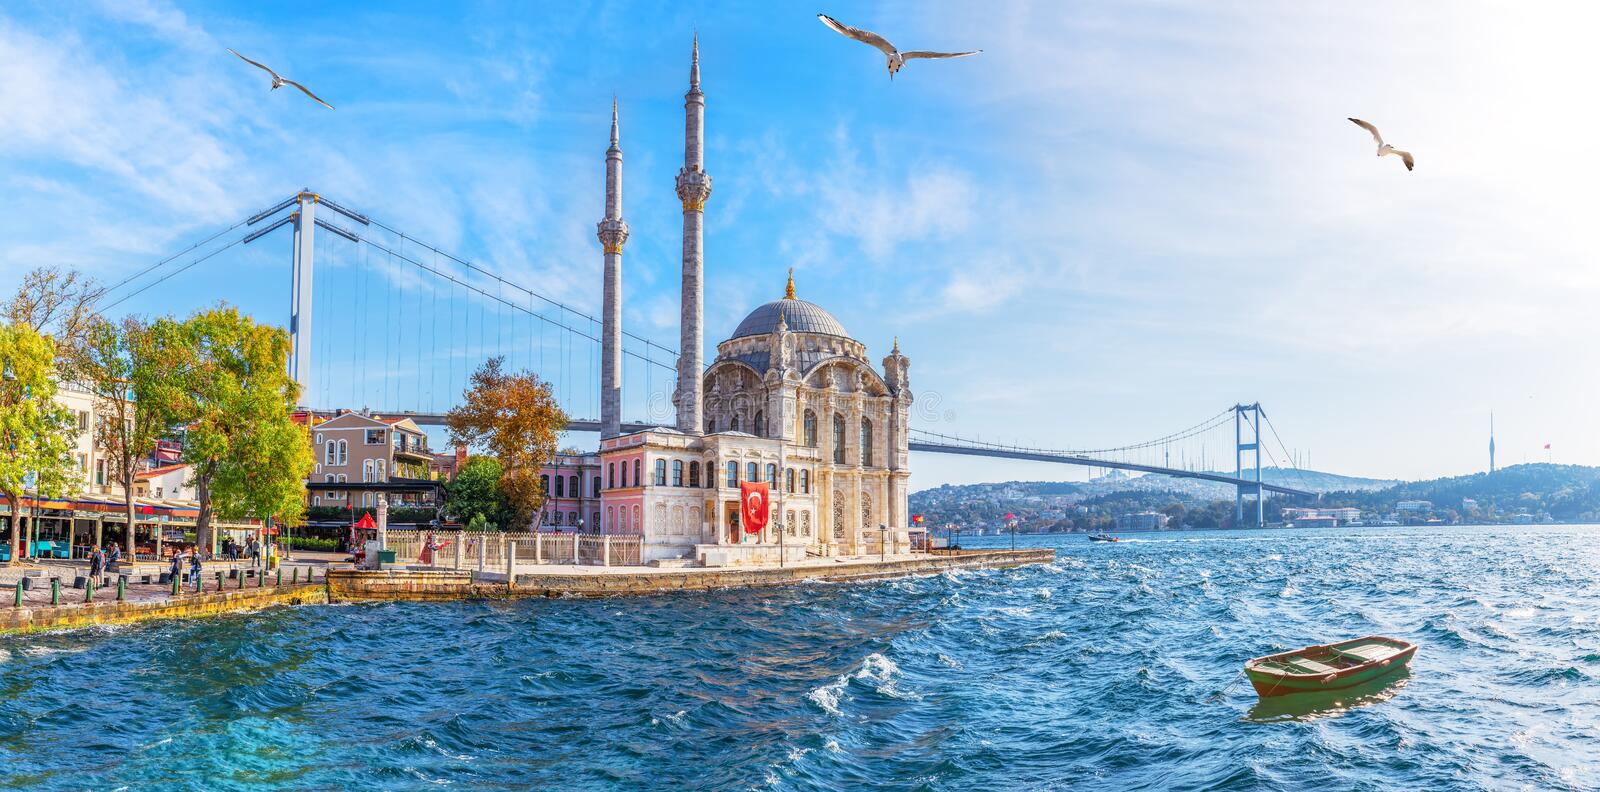  του τζαμιού Ortakoy όμορφη θέα στη θάλασσα κωνσταντινούπολη 163986825